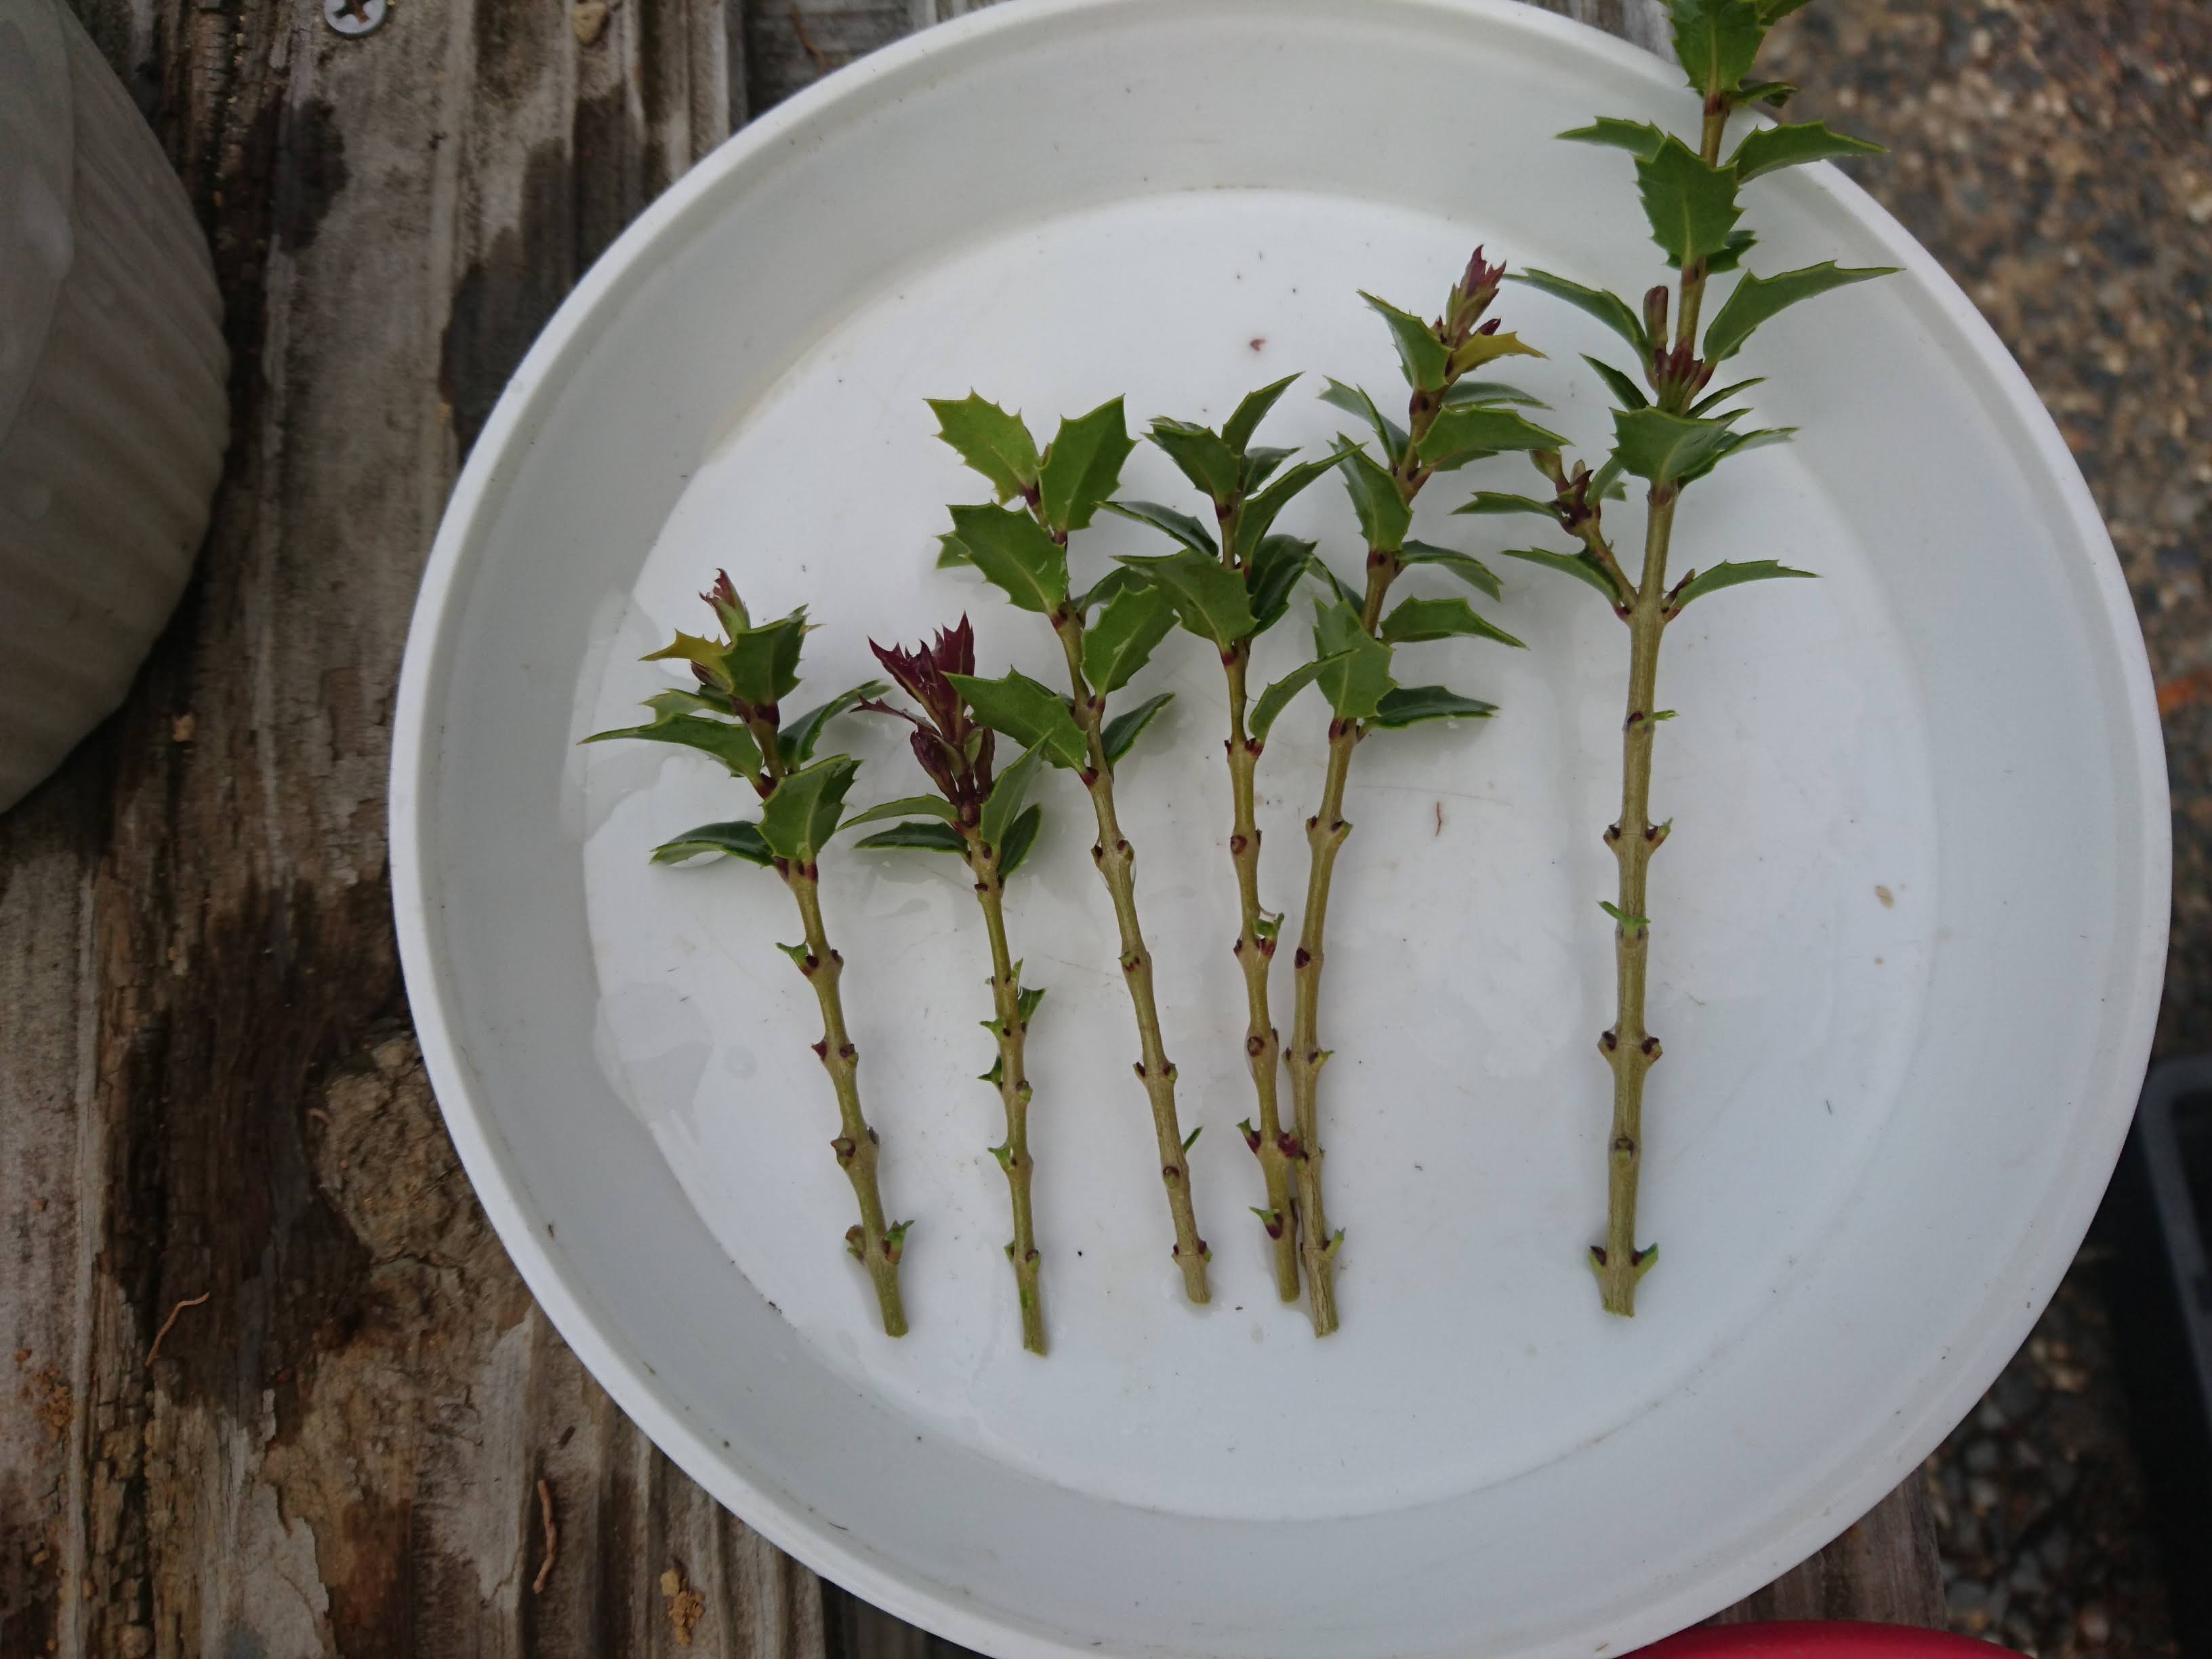 ヒイラギ 柊 の挿し木を成功させるポイント 矮性品種 香姫 のミニ盆栽の素材を作る メダカの大工